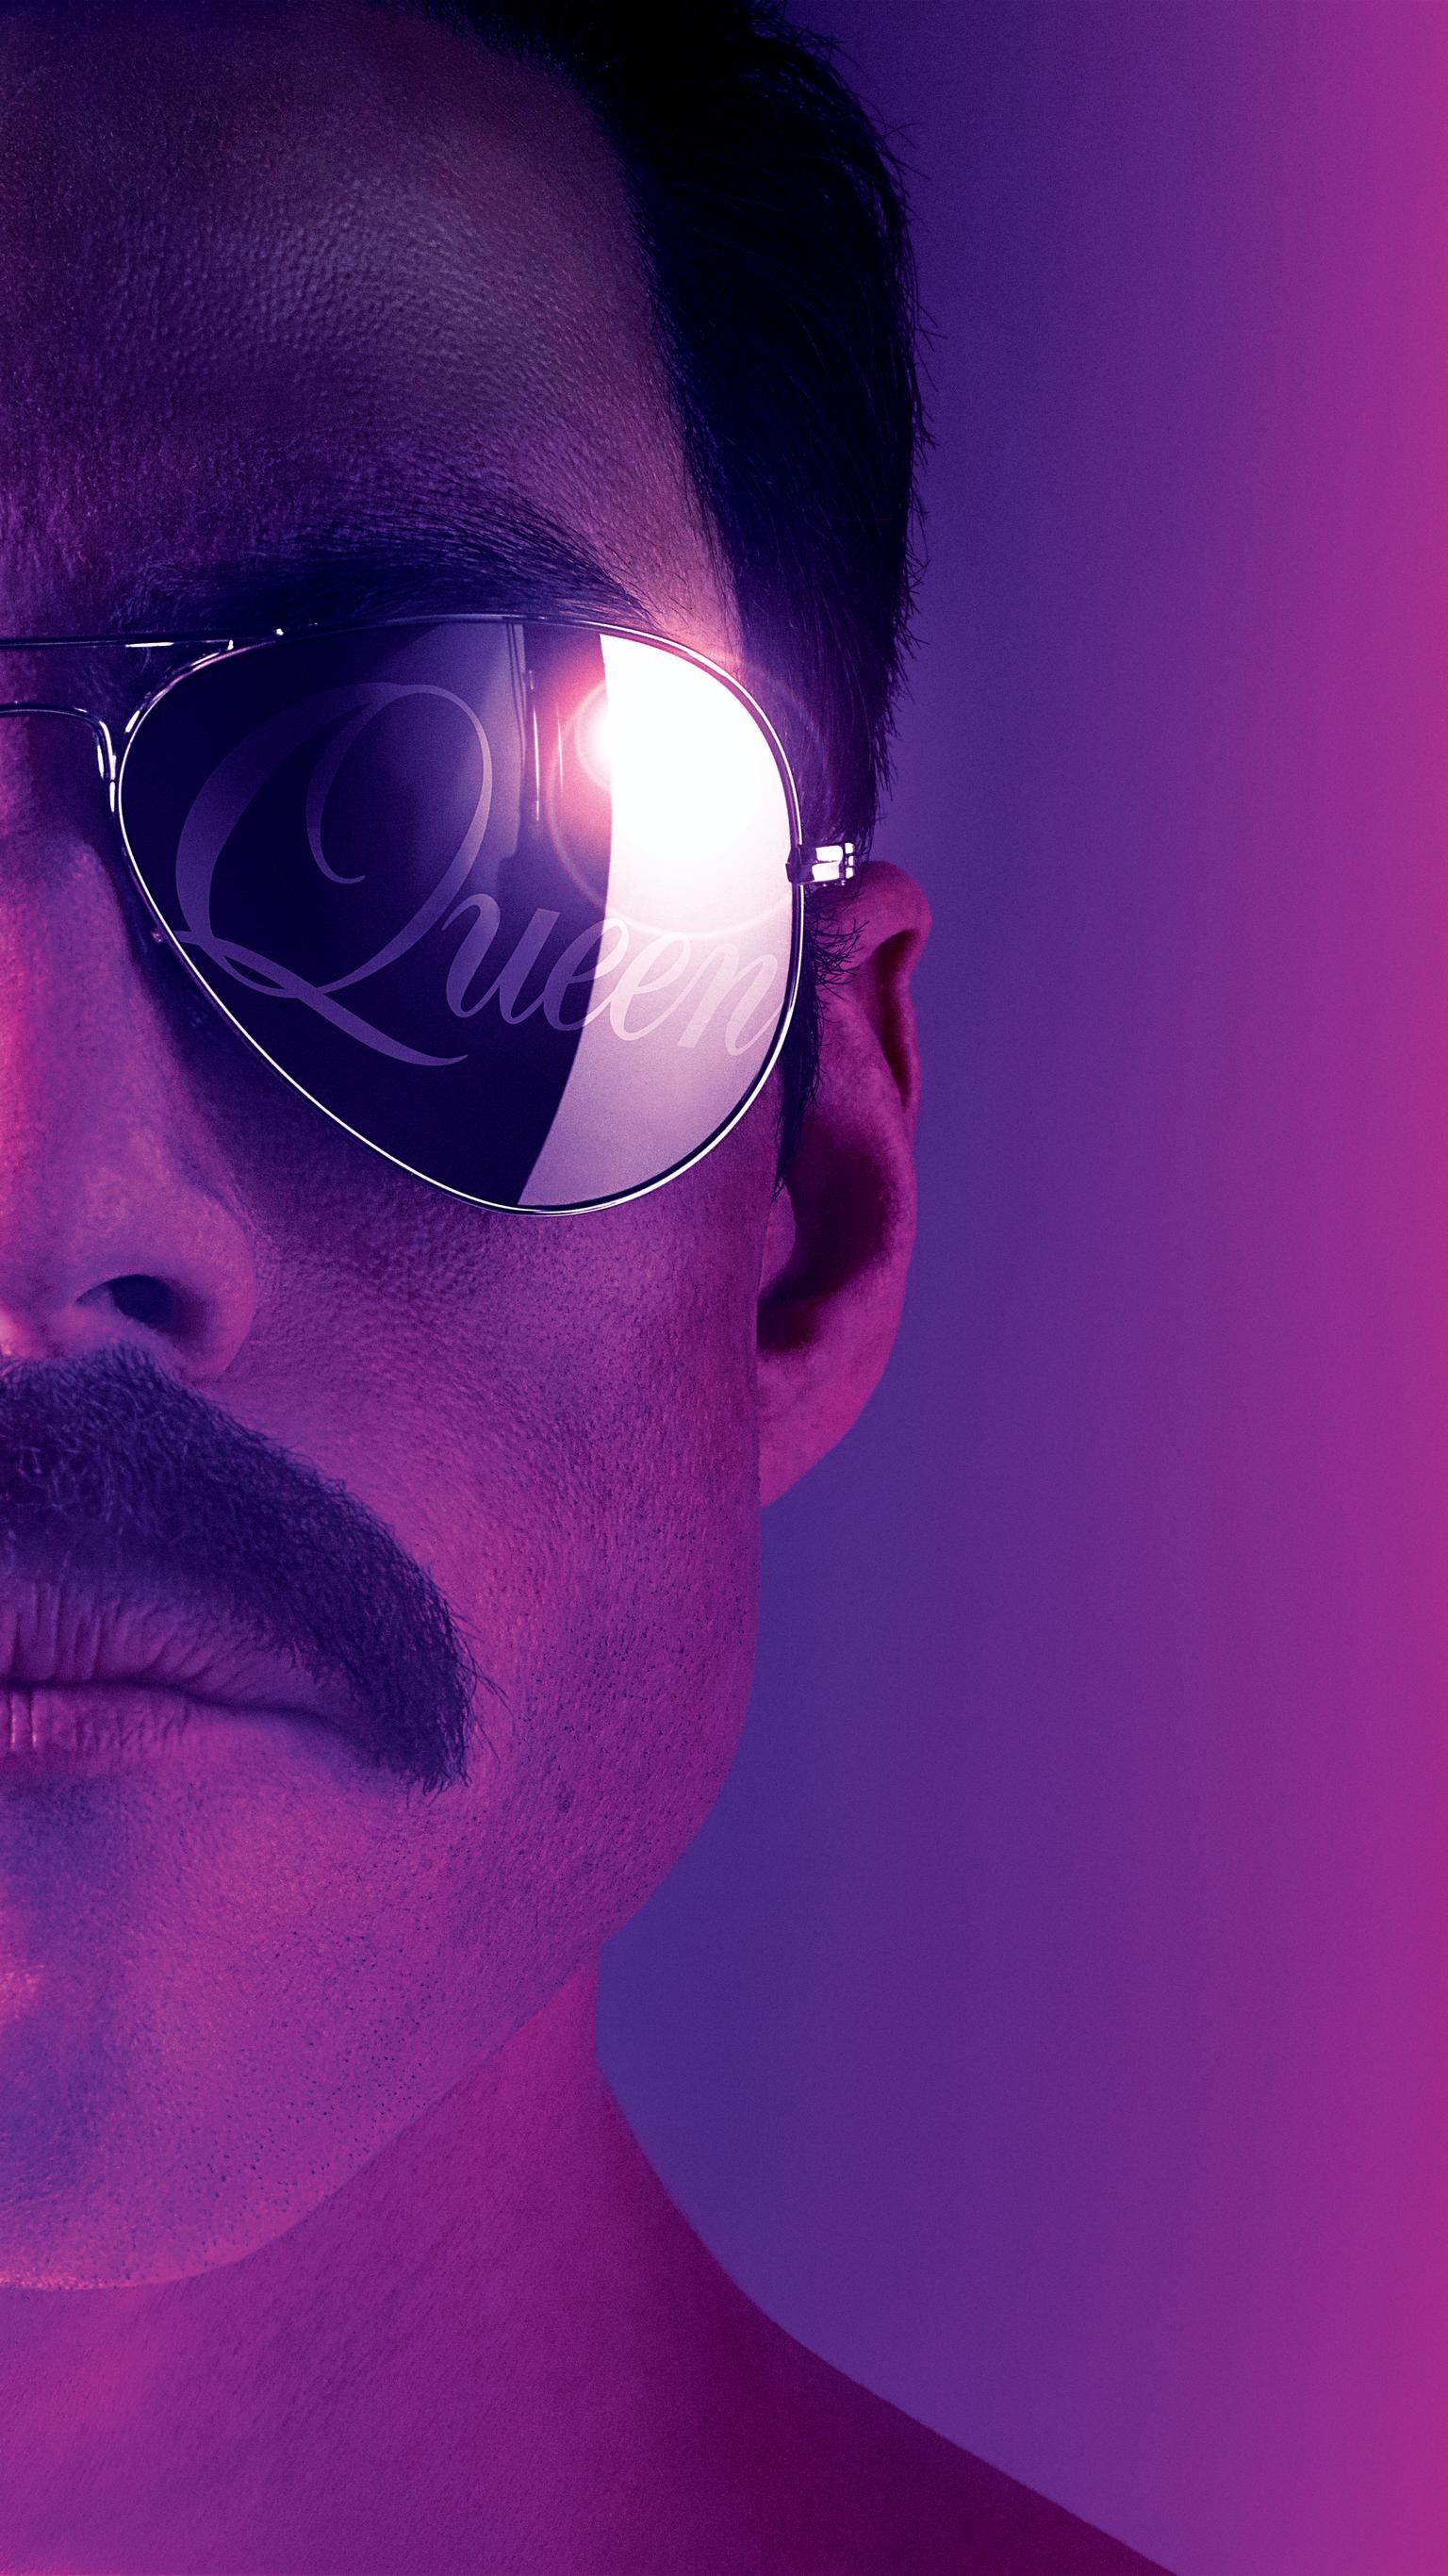 Bohemian Rhapsody for ipod download